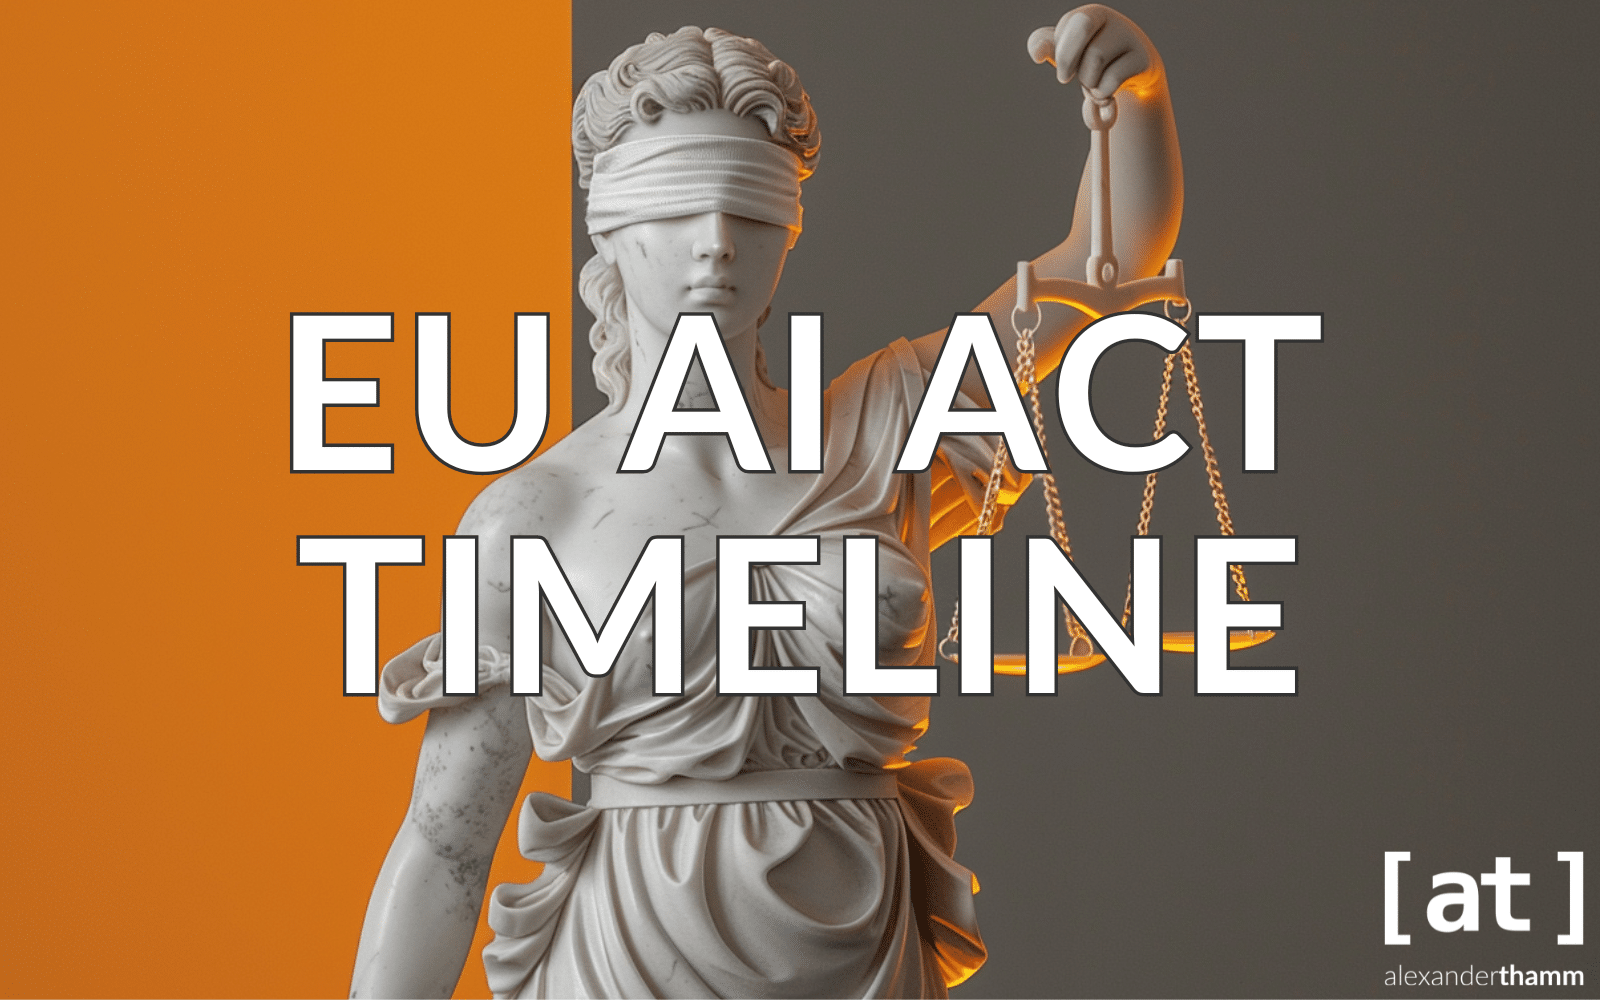 EU AI Act Timeline, eine Figur einer Justitia mit Augenbinde und ihrer Waage vor einem orange-grauen Hindergrund